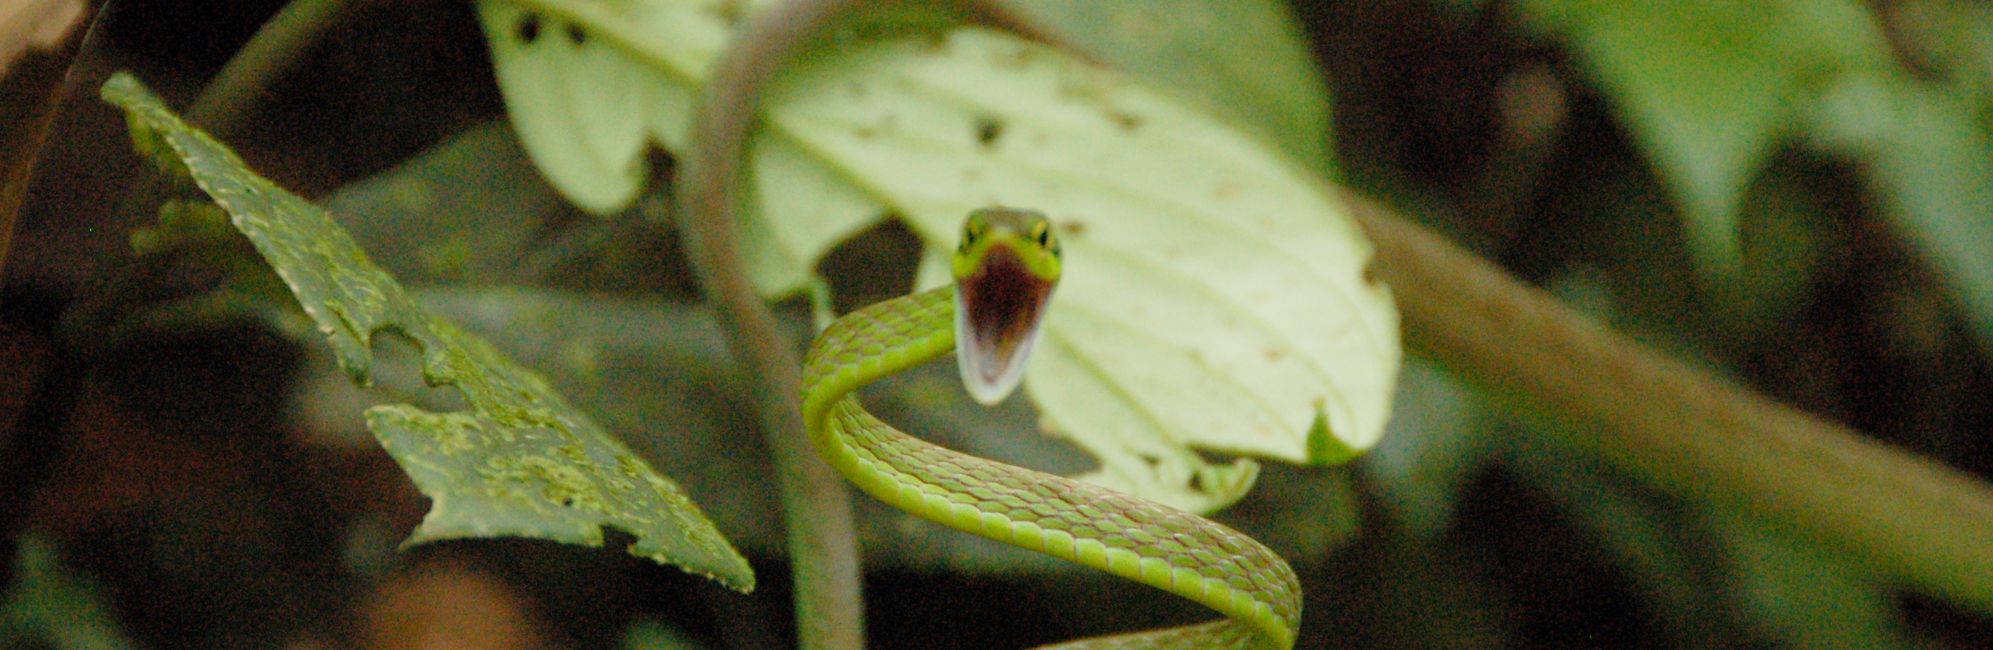 eyelash viper